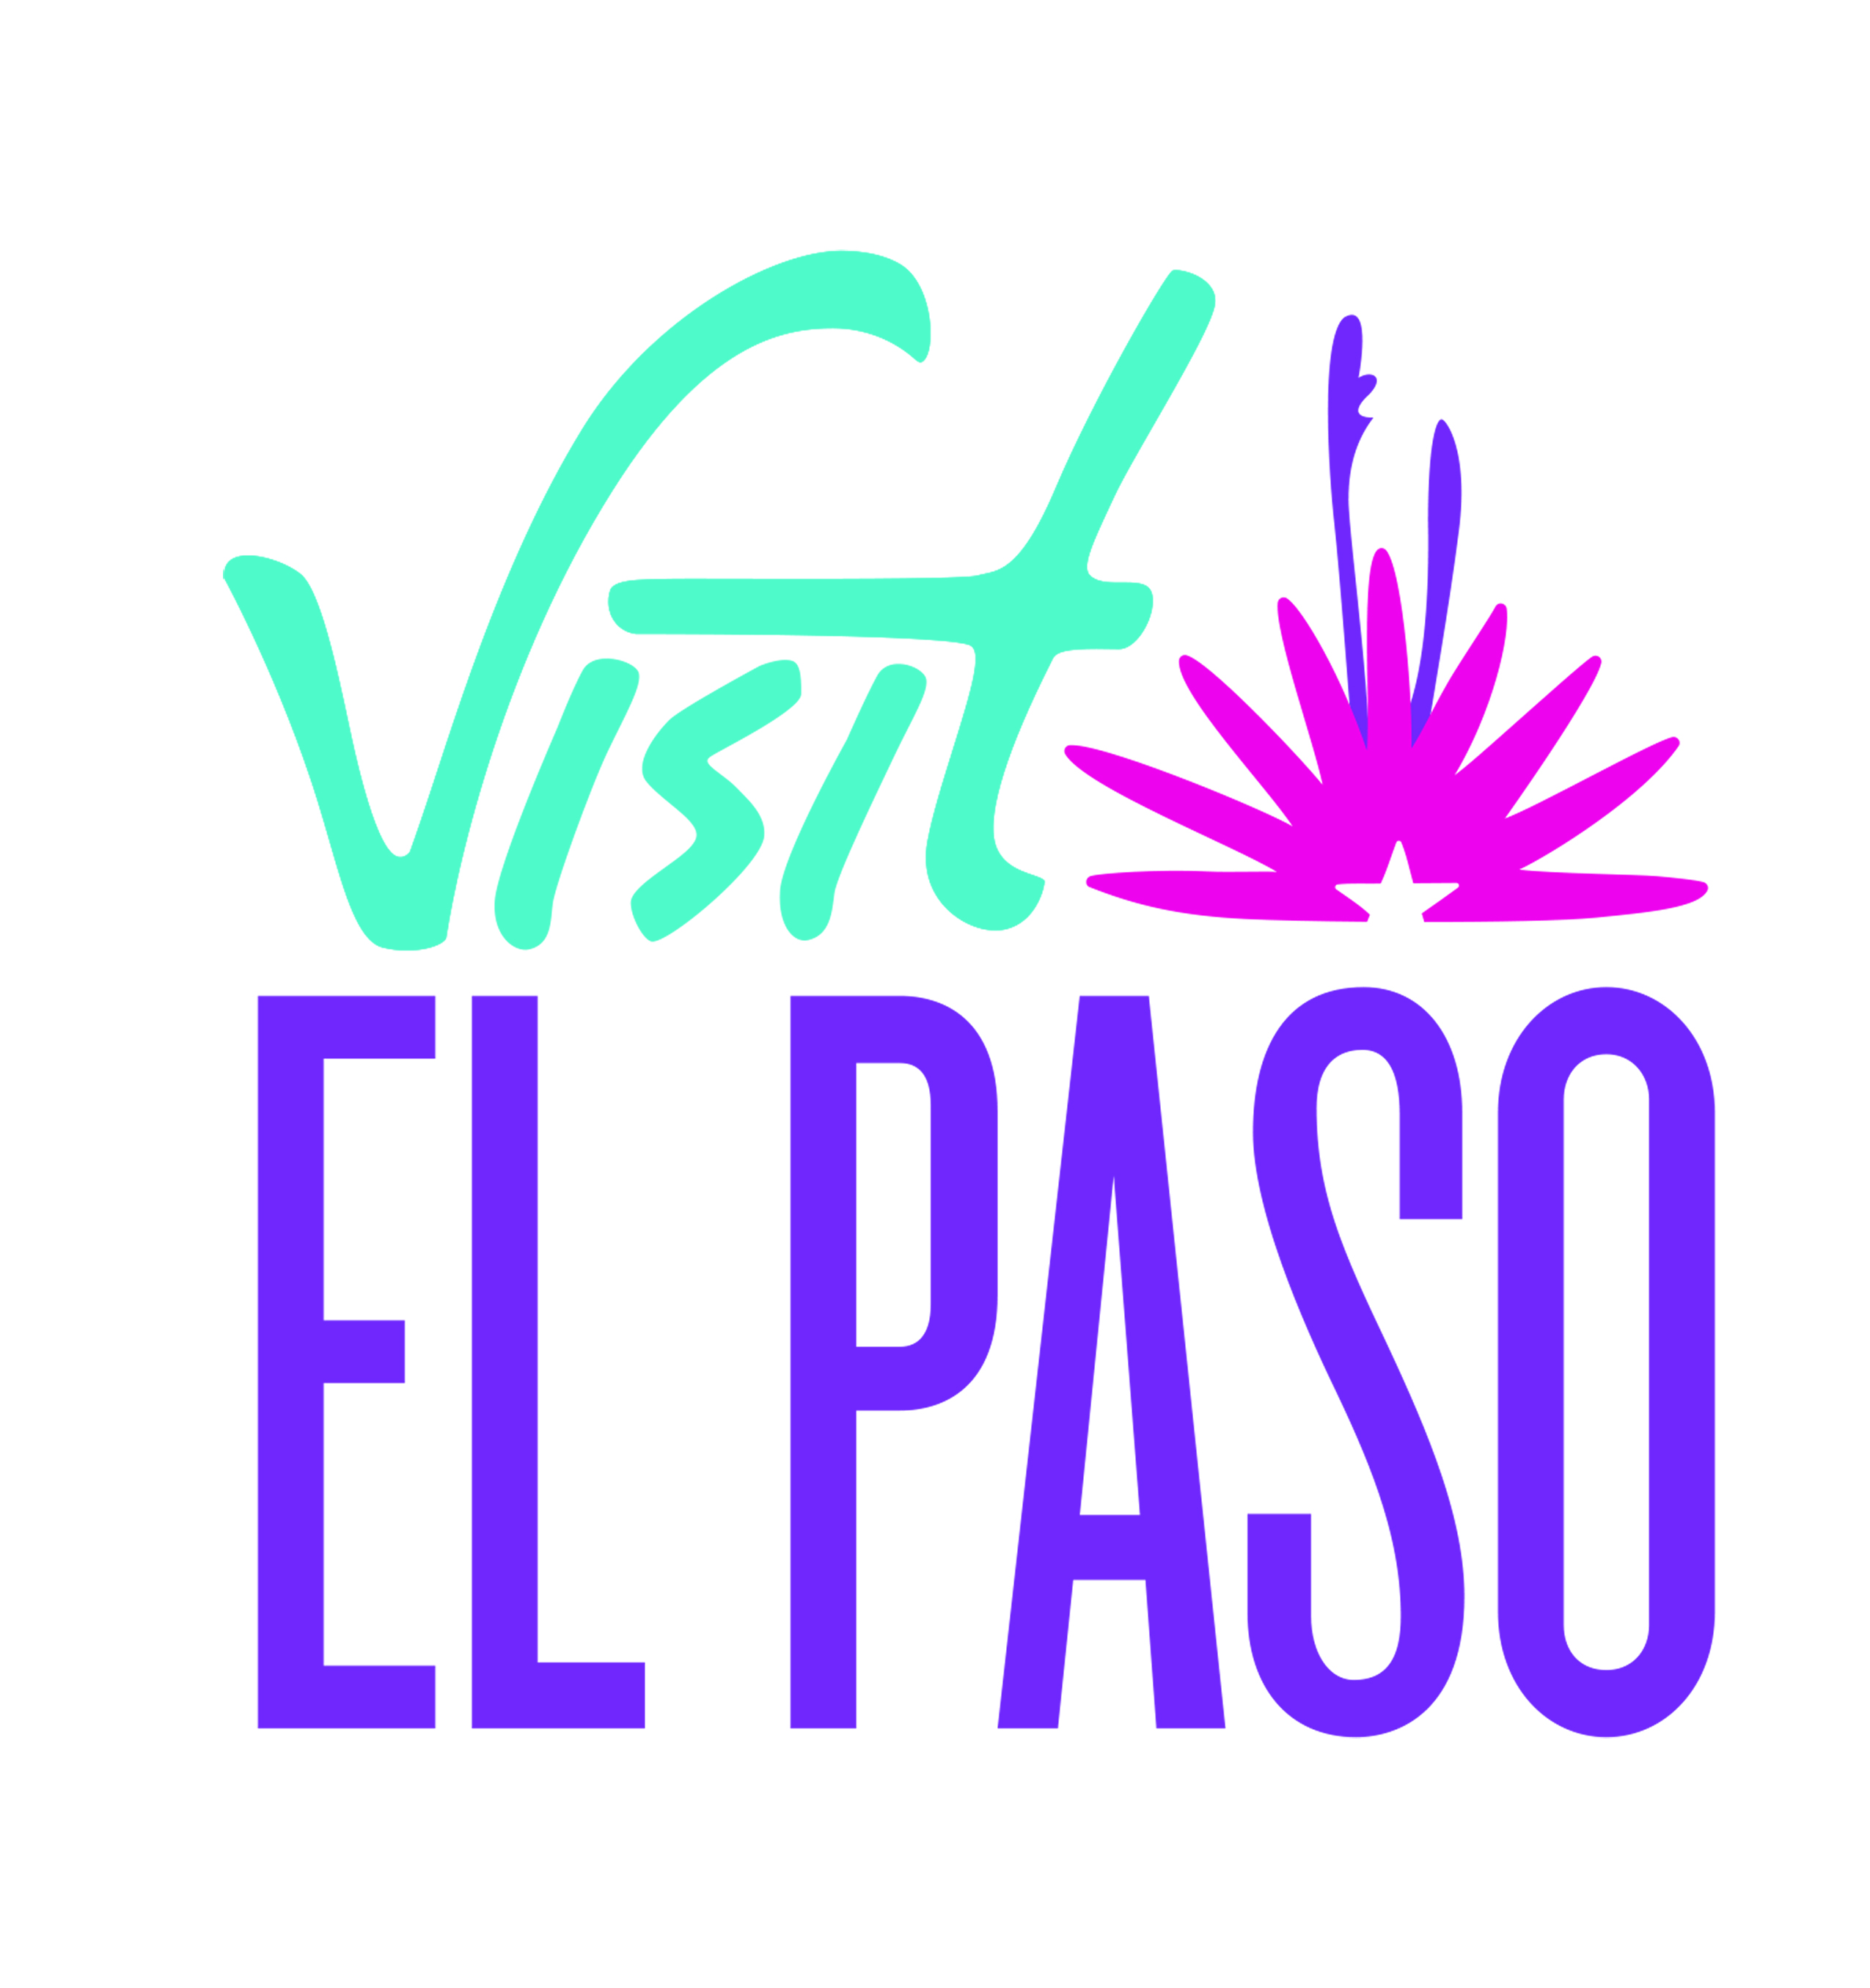 Visit El Paso